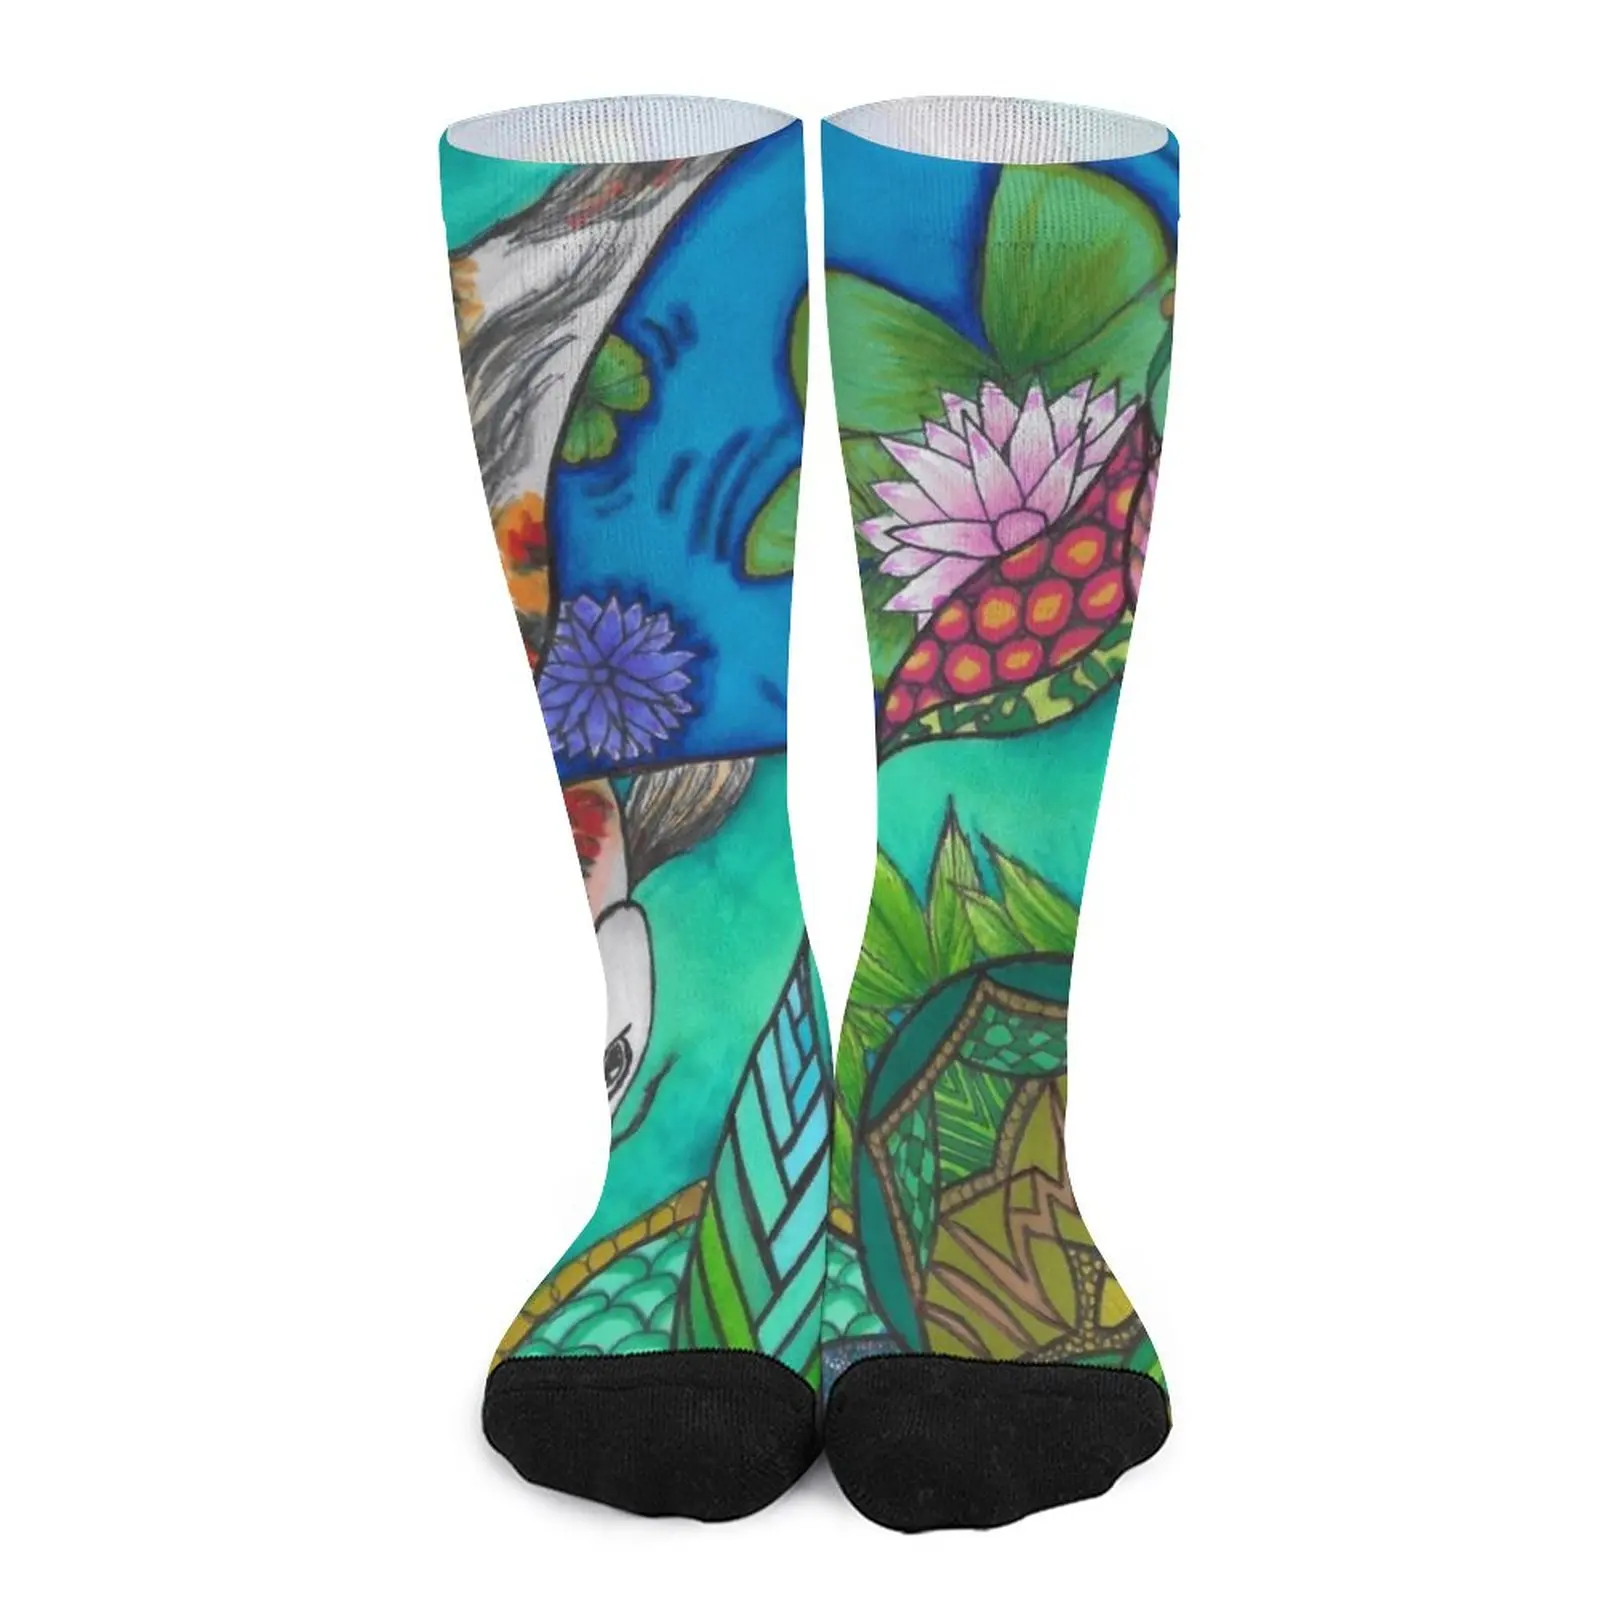 Koi Design Socks stockings for men Wholesale socks for men new in Men's socks